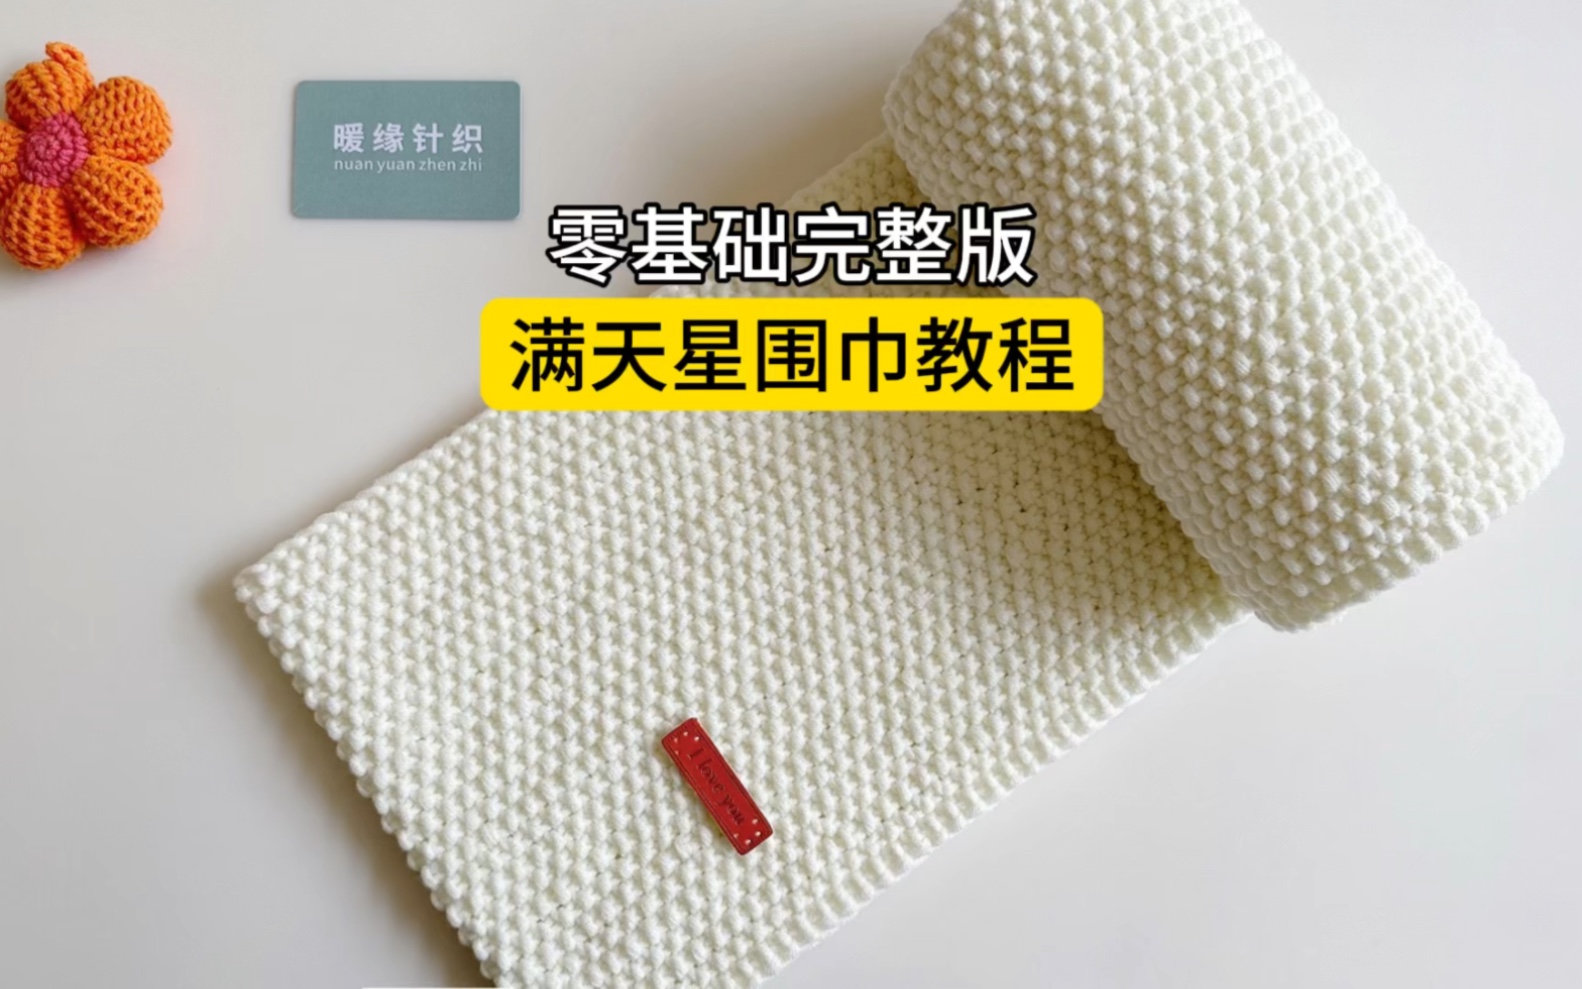 五指织围巾详细教程图片